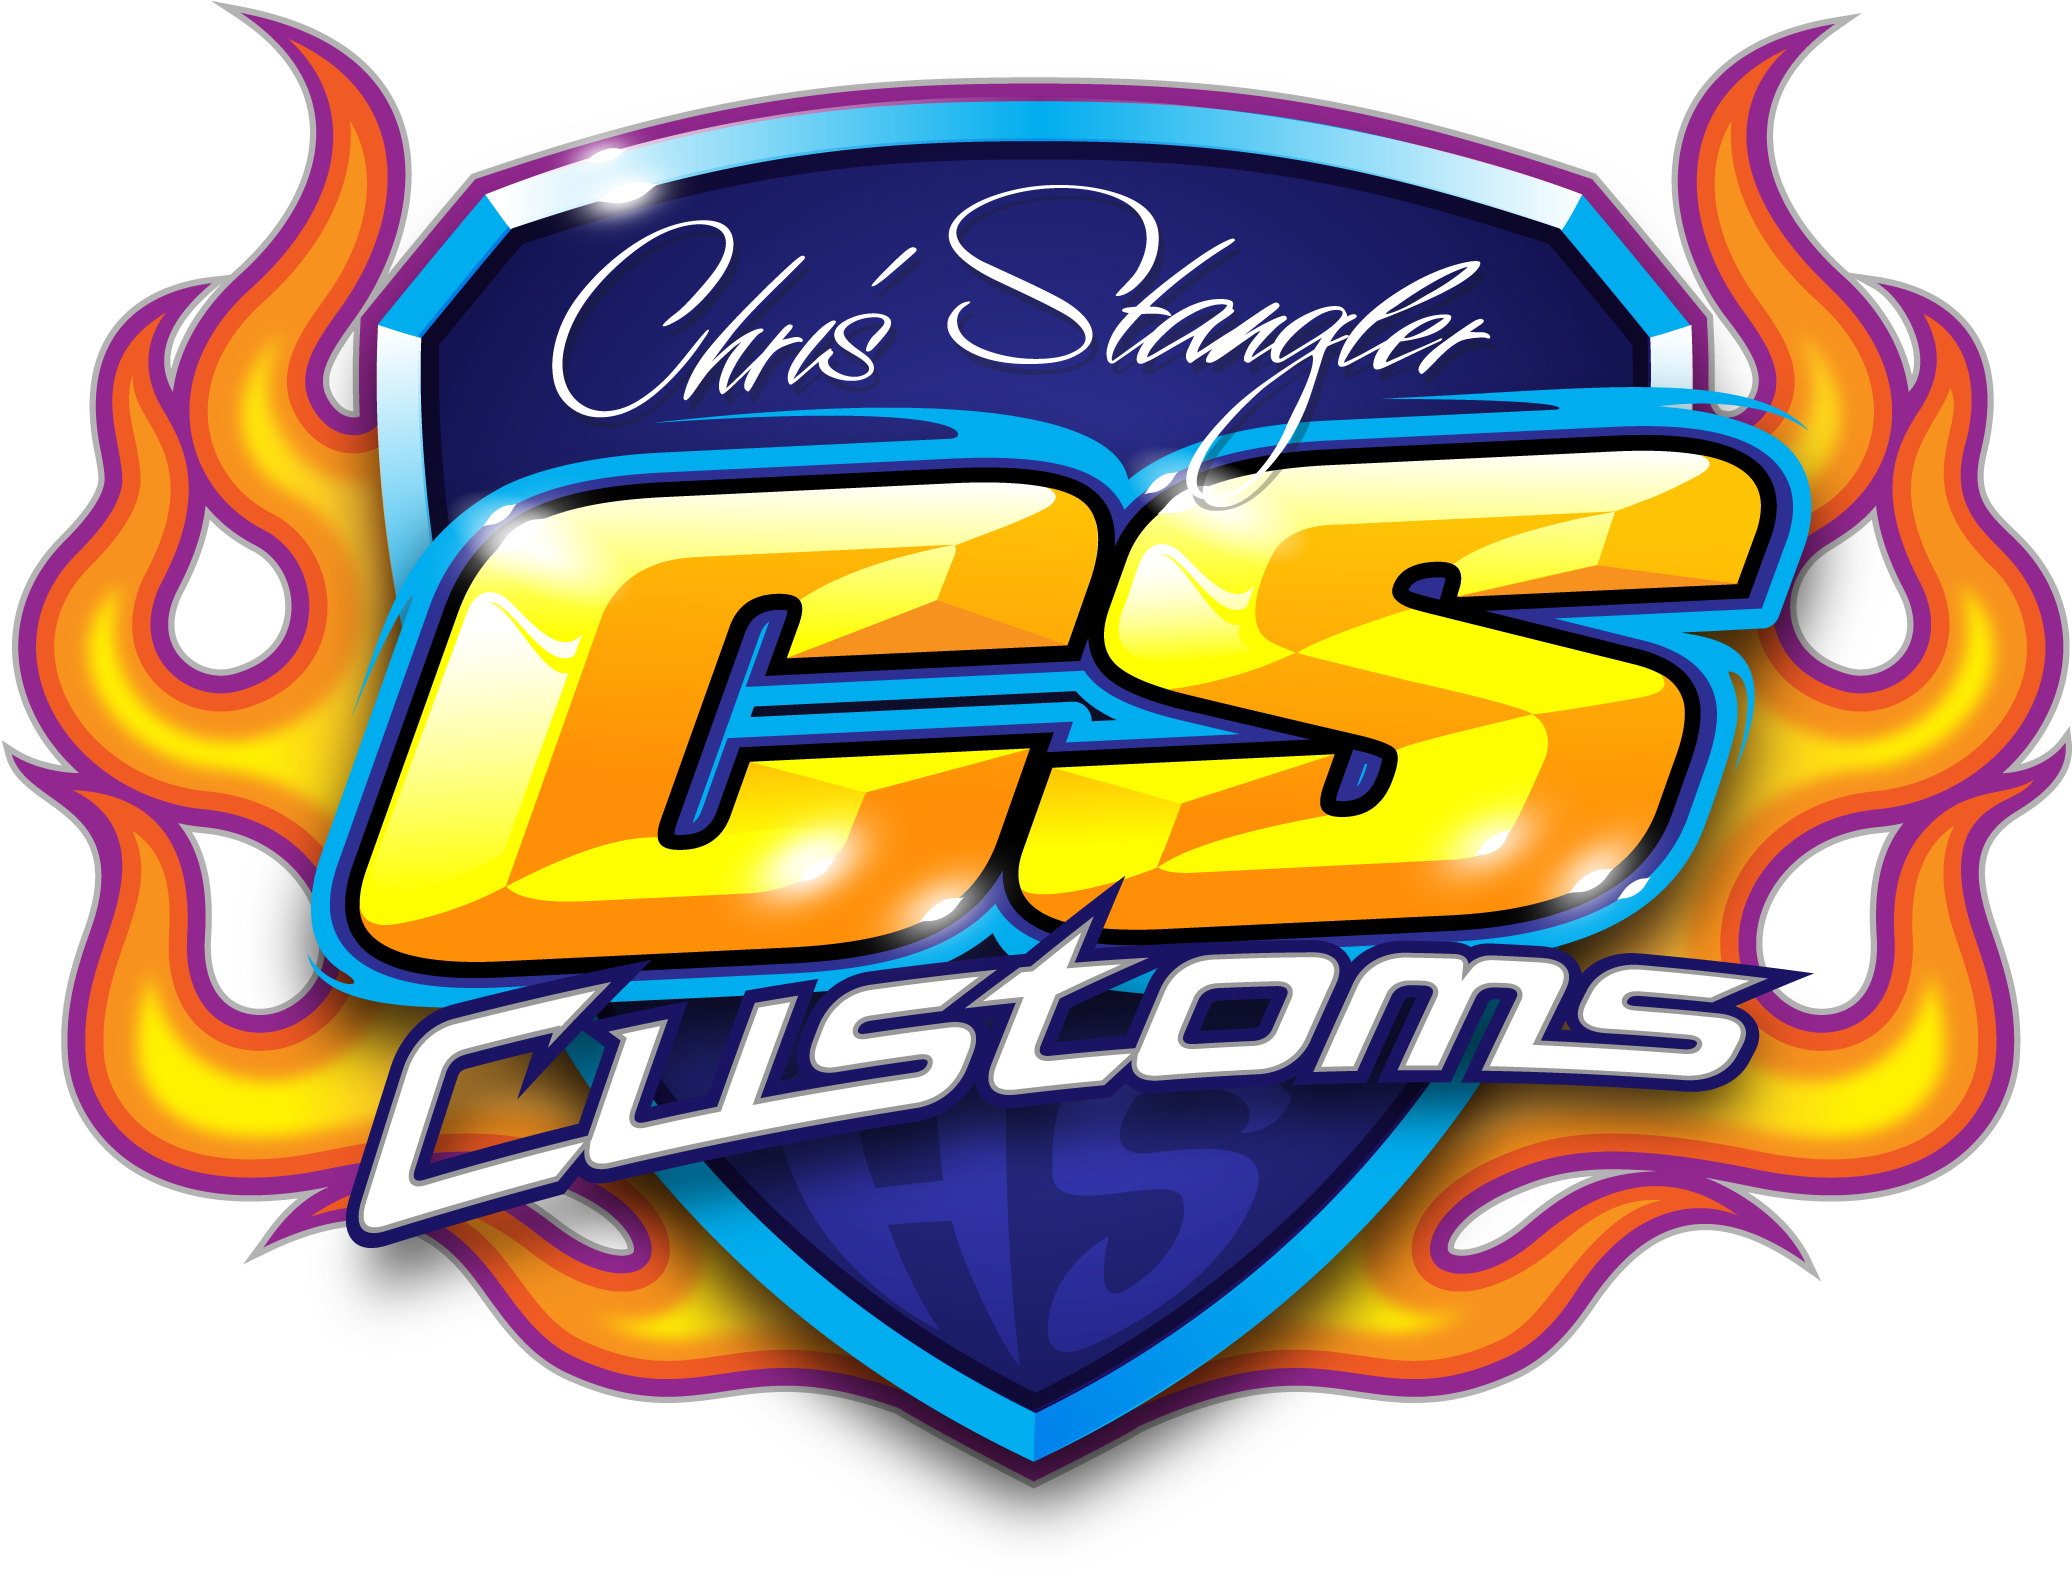 Chris Stangler Customs - Customs (2203x1593)